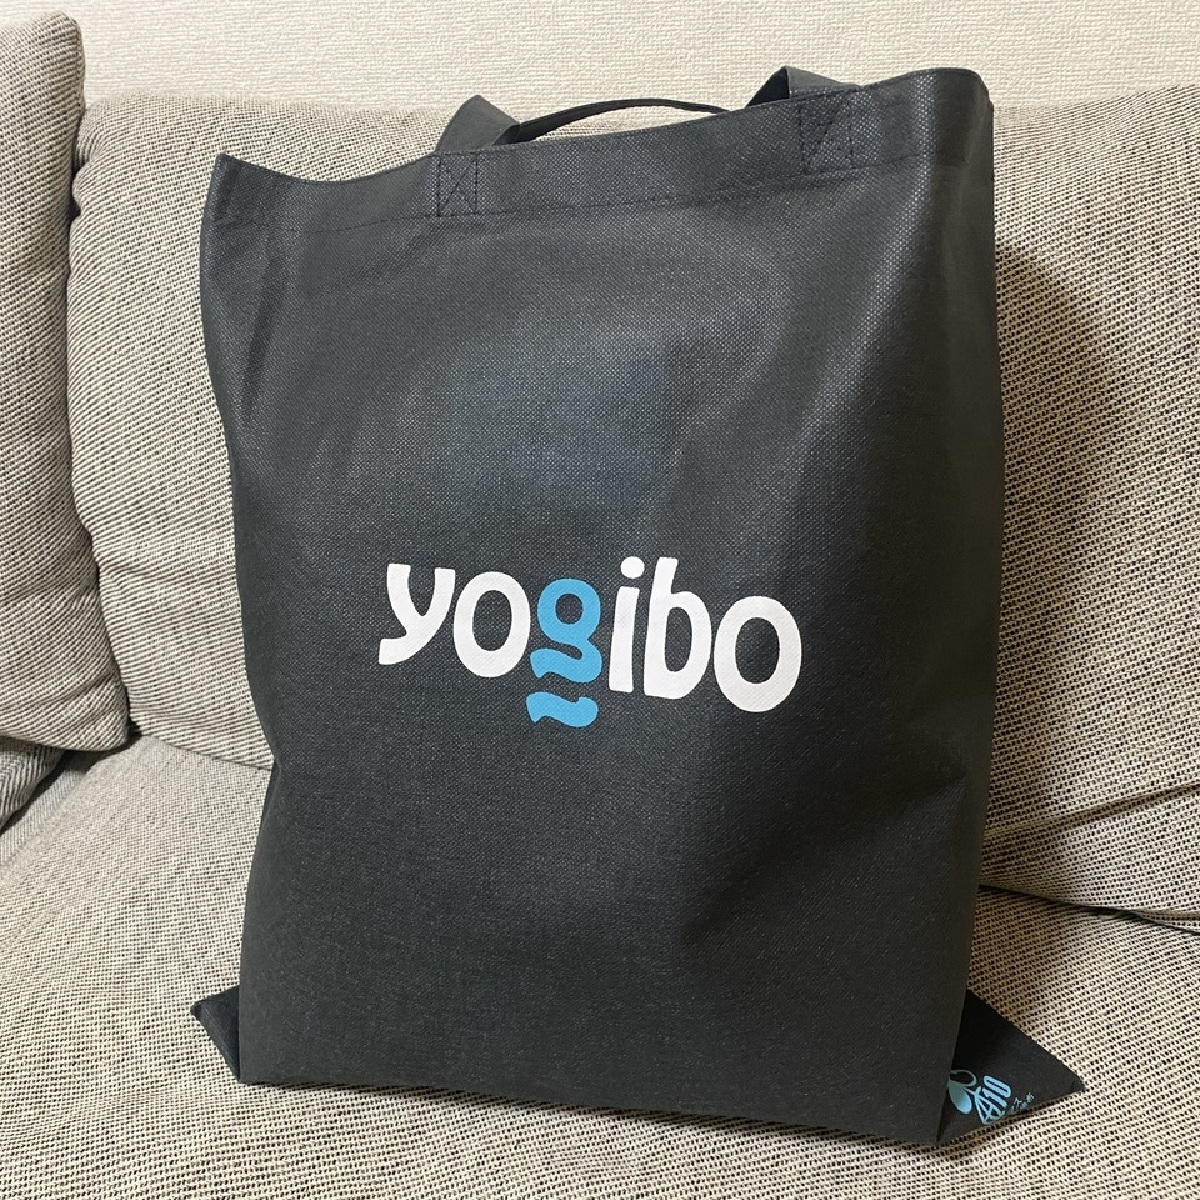 《Yogibo》『買って良かった』と話題のネックピローを購入しました！